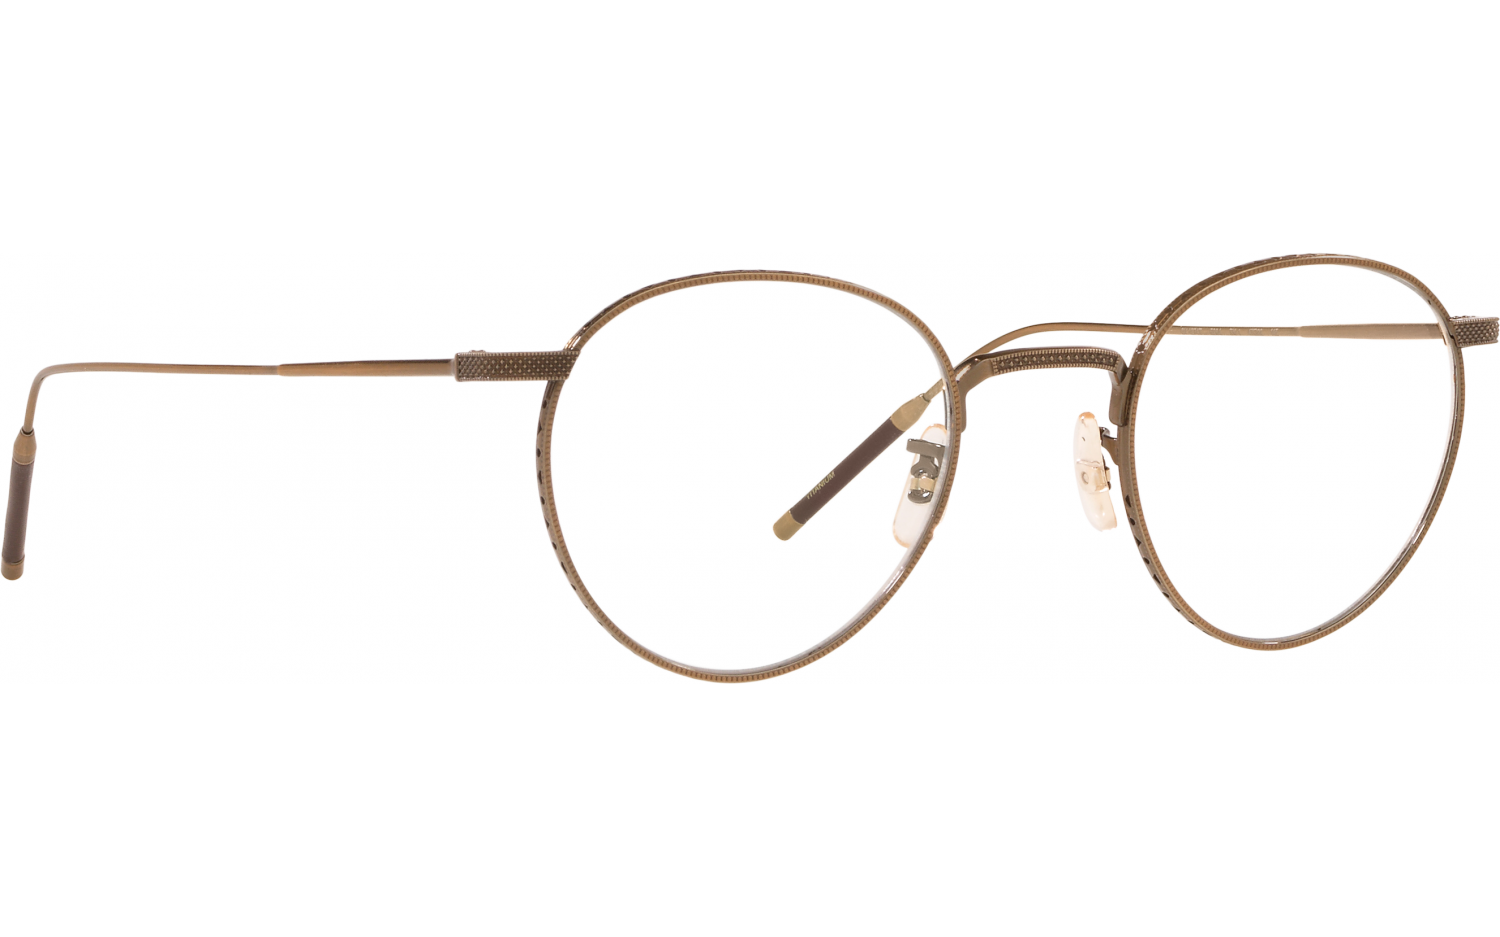 Oliver TK-1 Eyeglasses in Brushed Gold